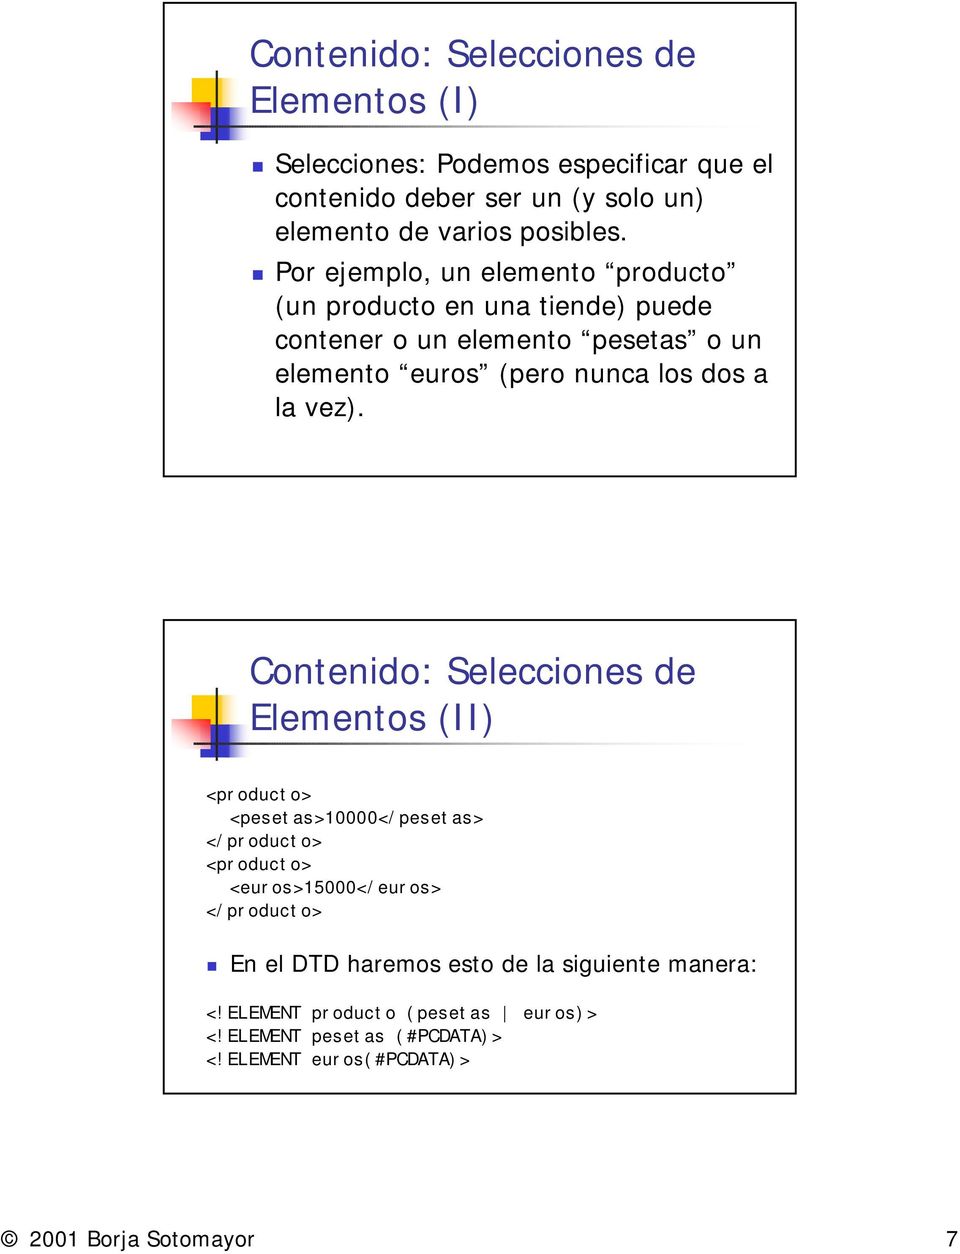 vez). Contenido: Selecciones de Elementos (II) <producto> <pesetas>10000</pesetas> </producto> <producto> <euros>15000</euros> </producto>!